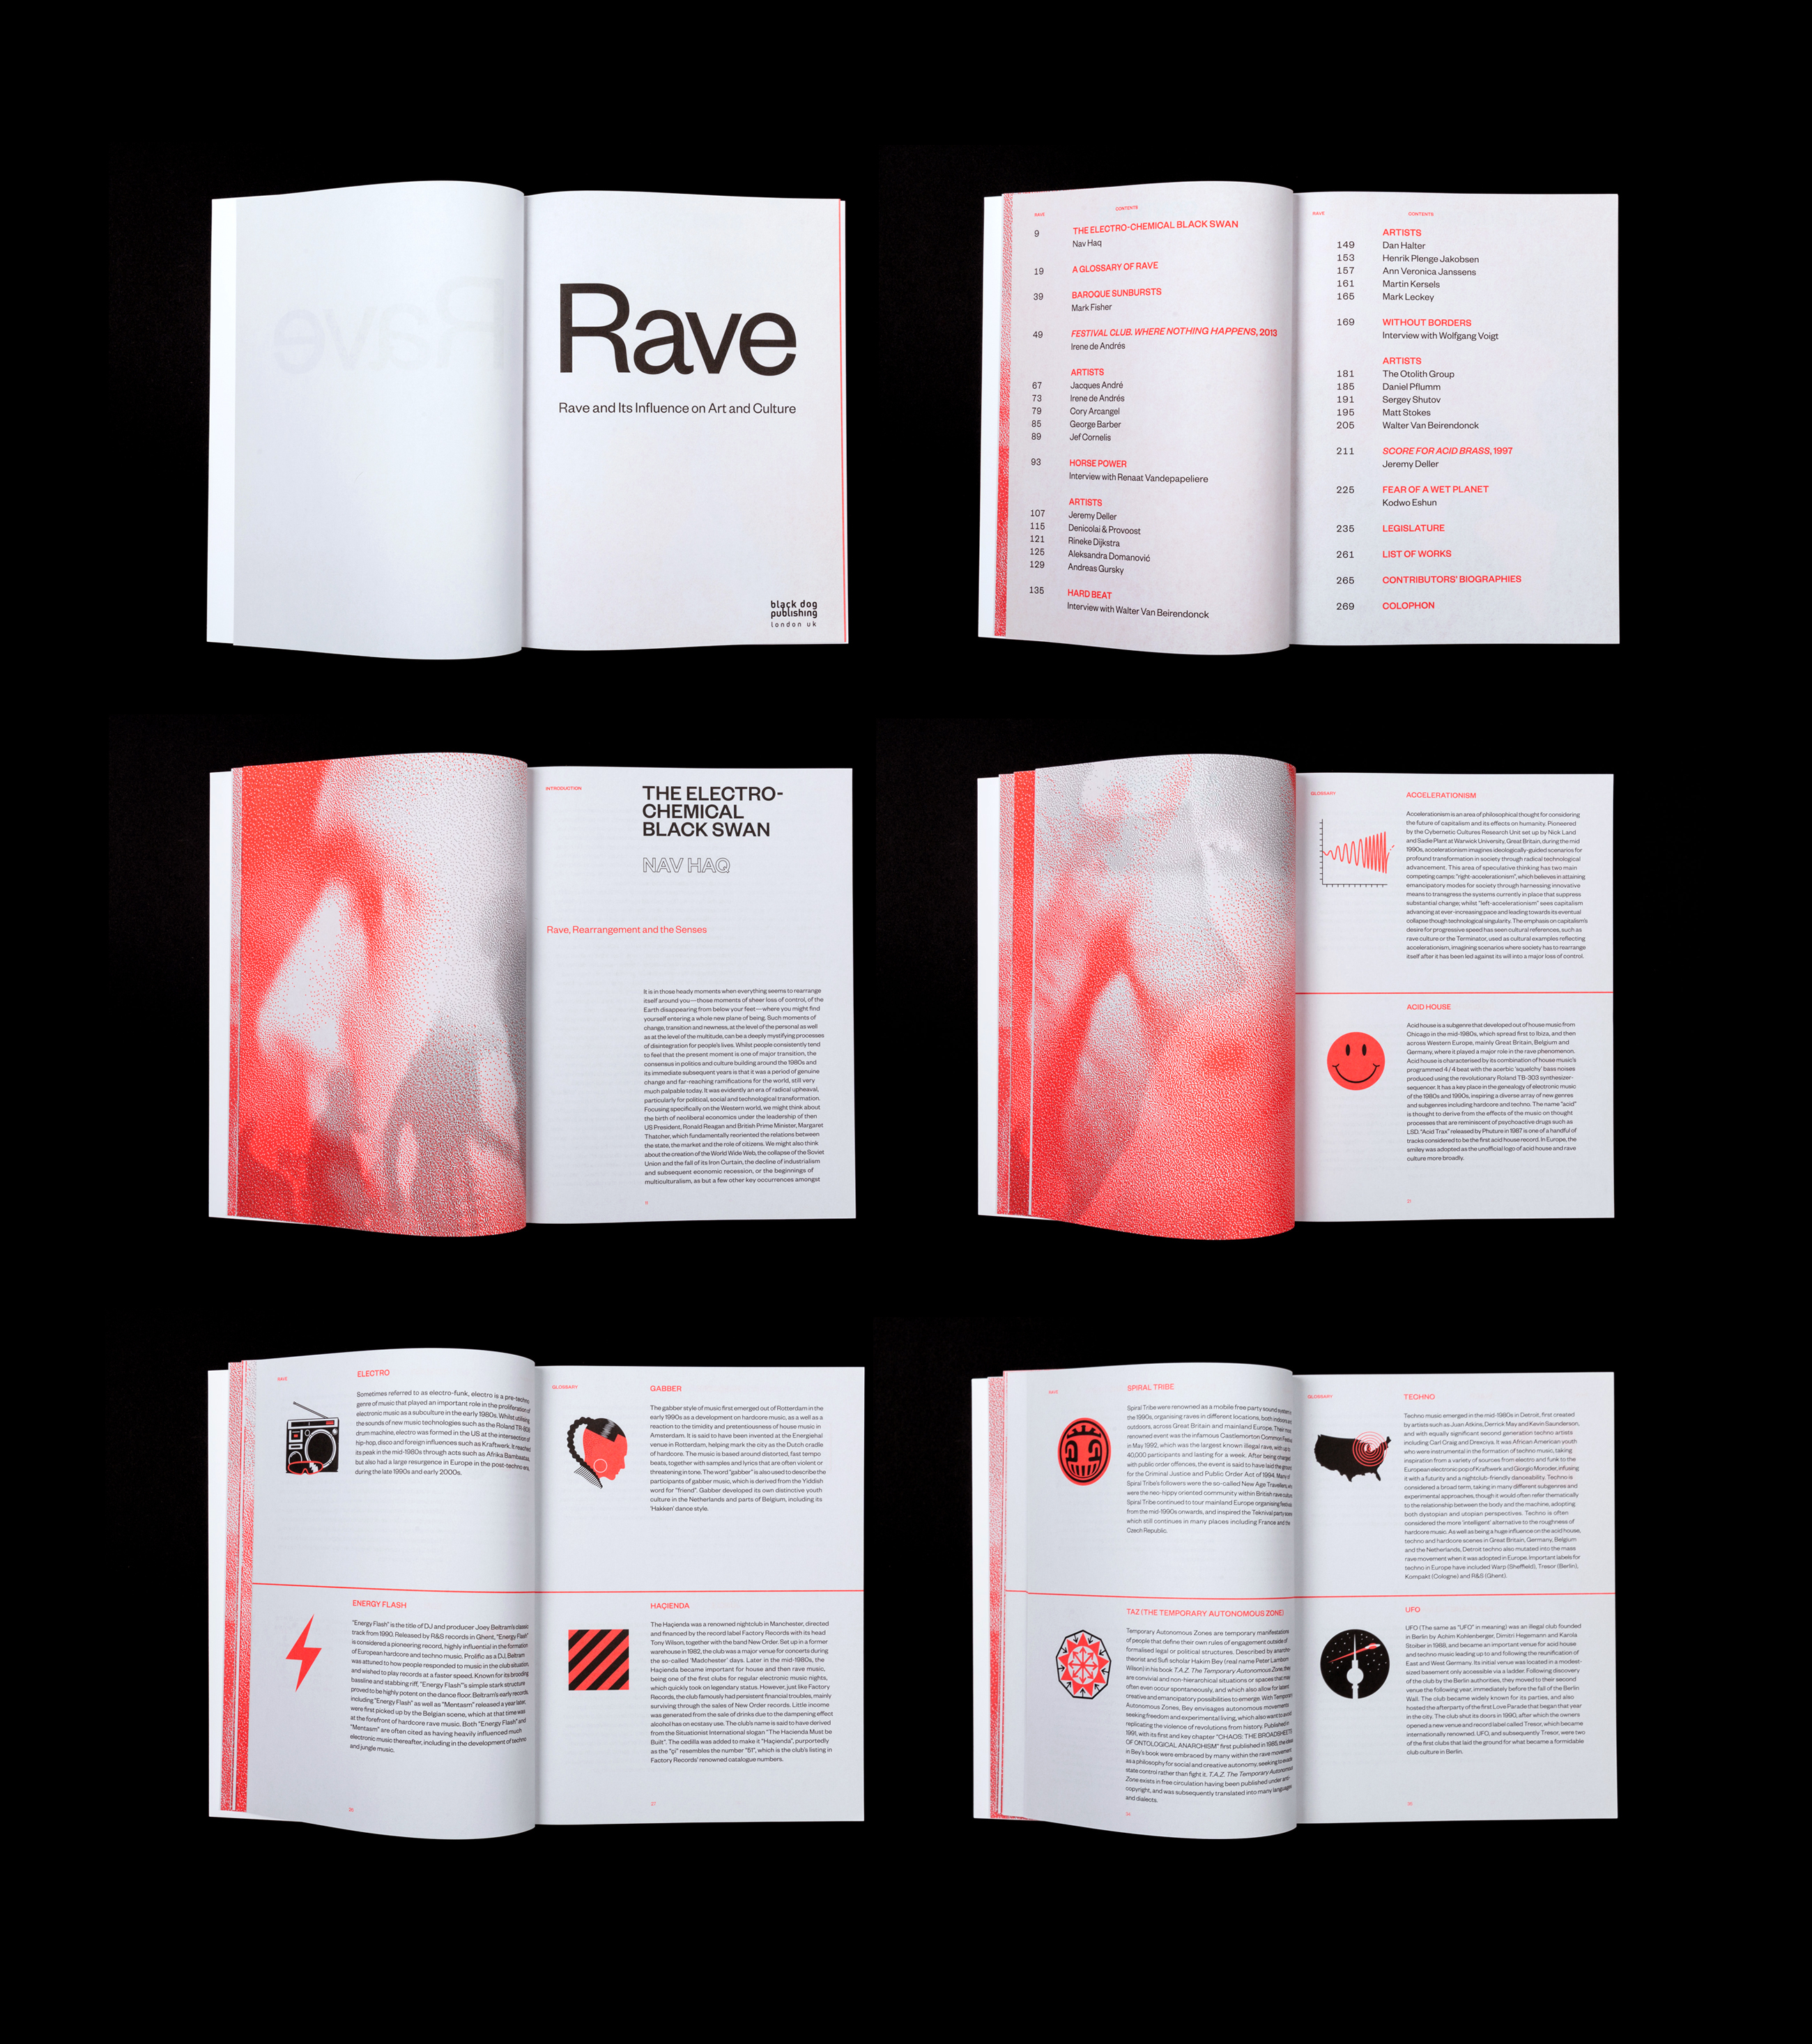 Rave book design, by Jelle Maréchal - Design Week